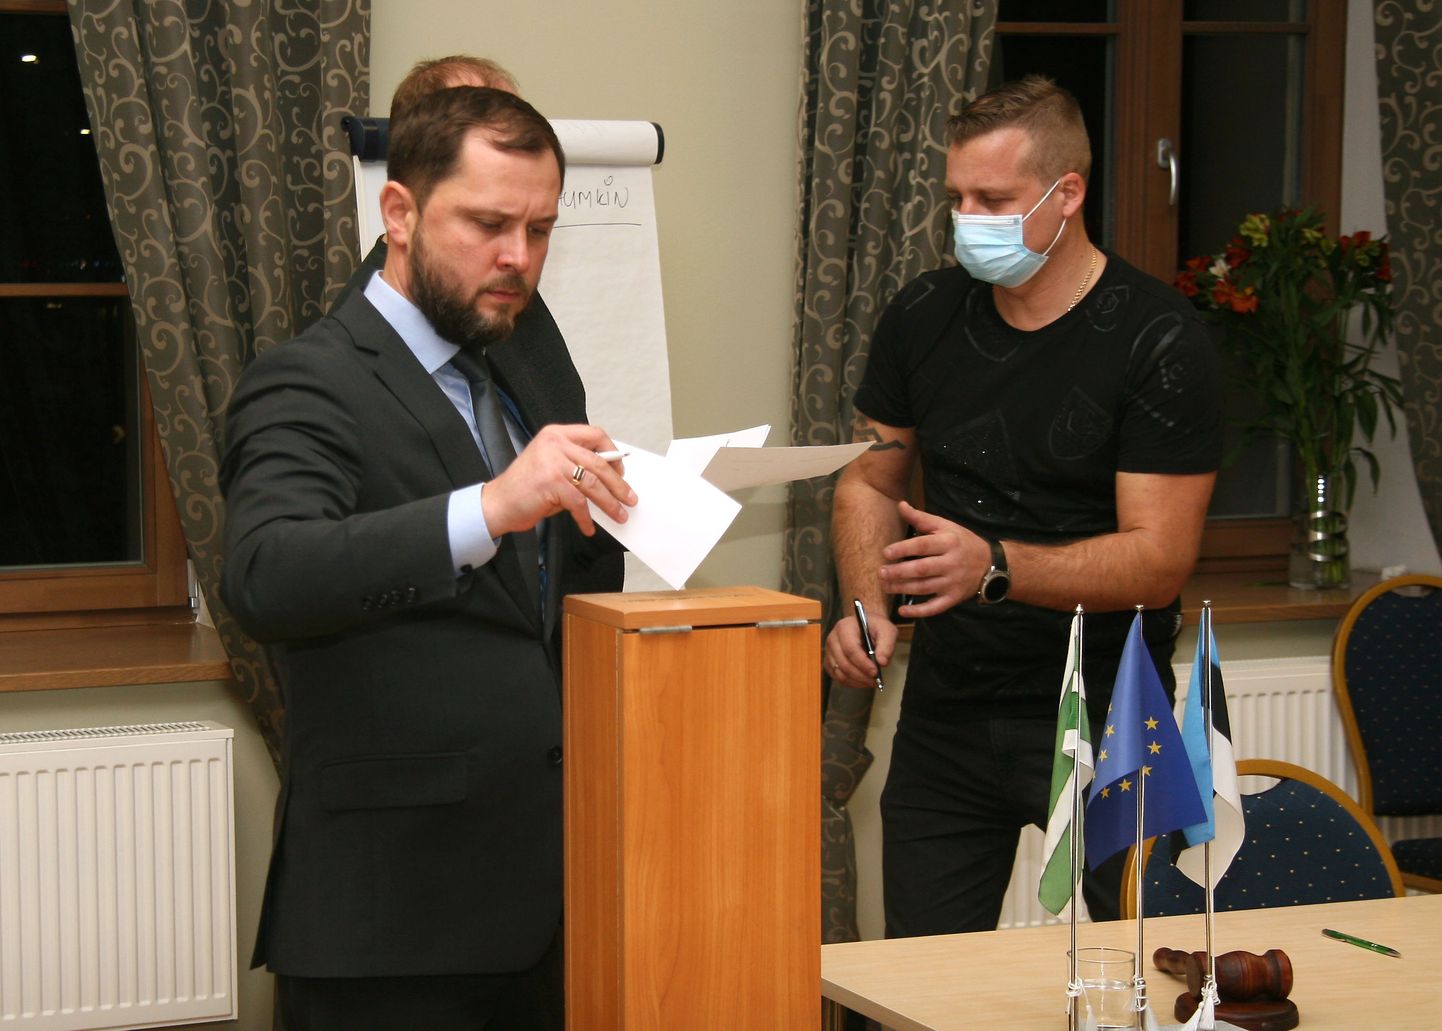 По словам председателя Йыхвиского волостного собрания Алексея Наумкина, в маске ему очень трудно разговаривать, затрудняется и дыхание.